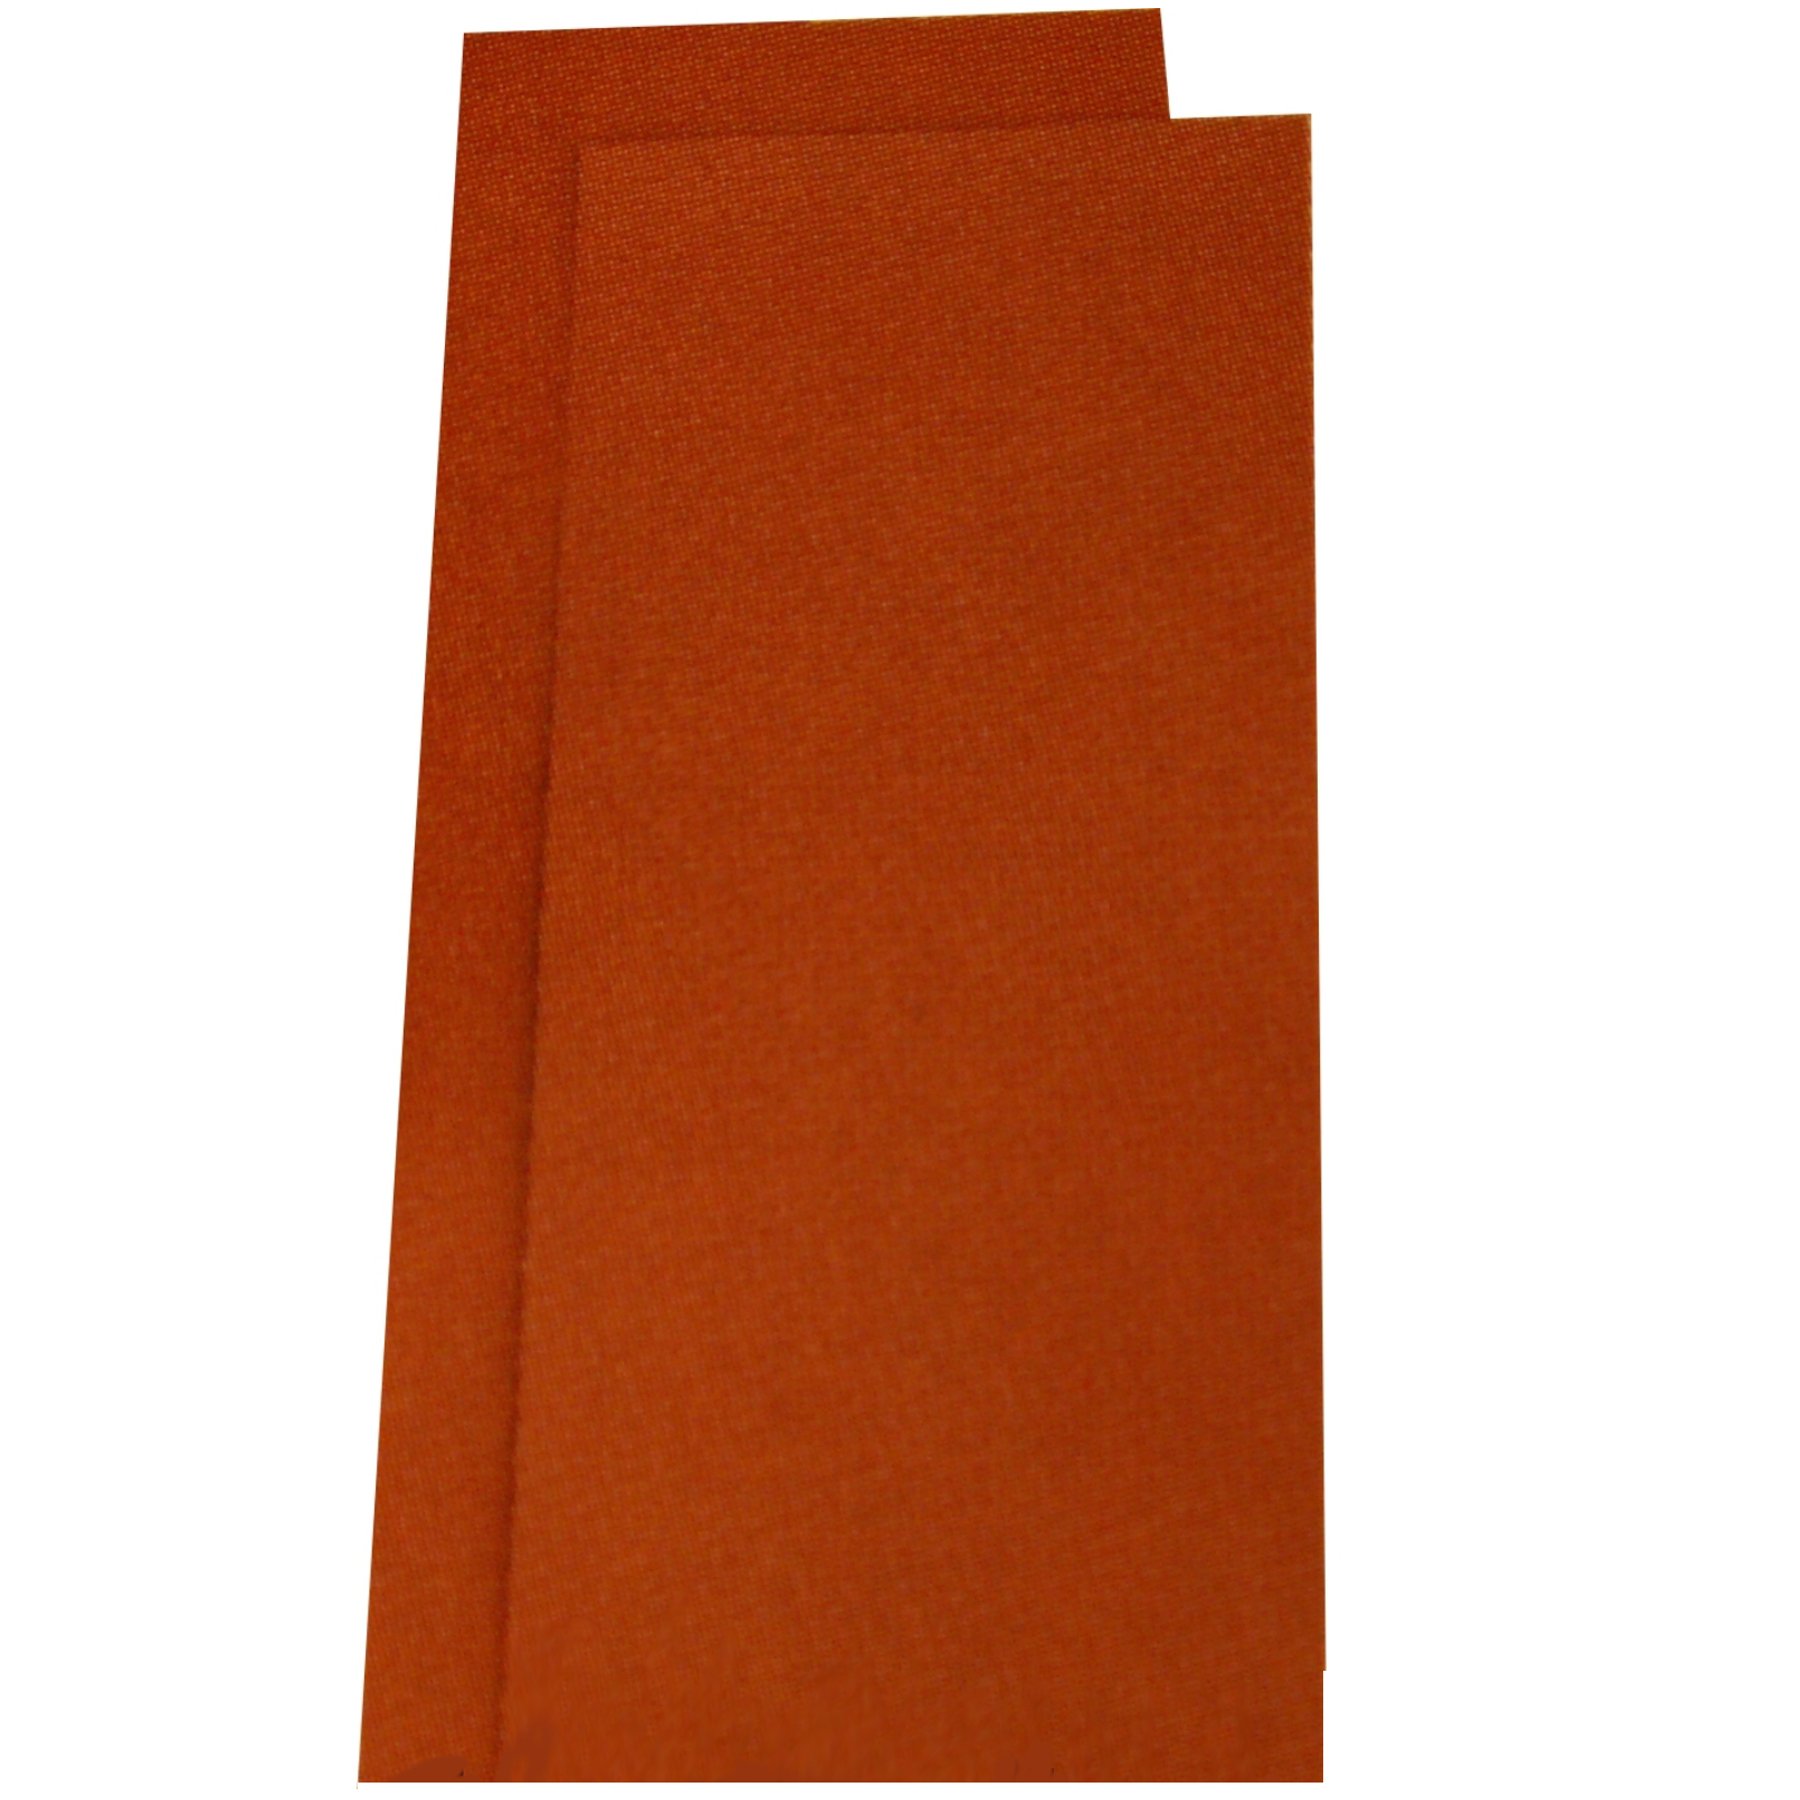 10 Blatt Trockenschleifpapier Körnung 40 Schleifpapier Rutscherpapier von Schleifpapier Trockenschleifpapier